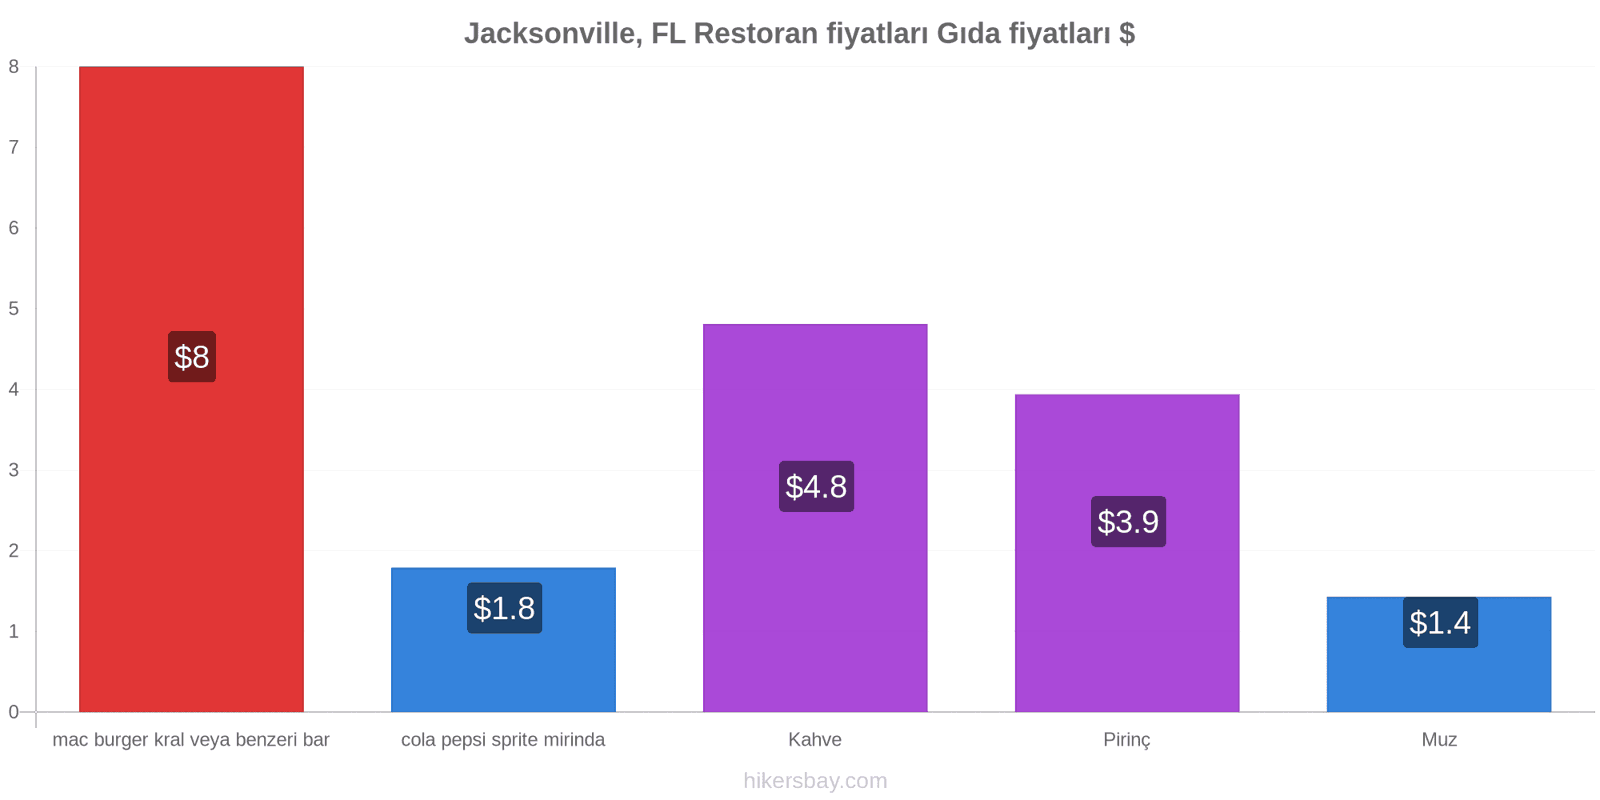 Jacksonville, FL fiyat değişiklikleri hikersbay.com